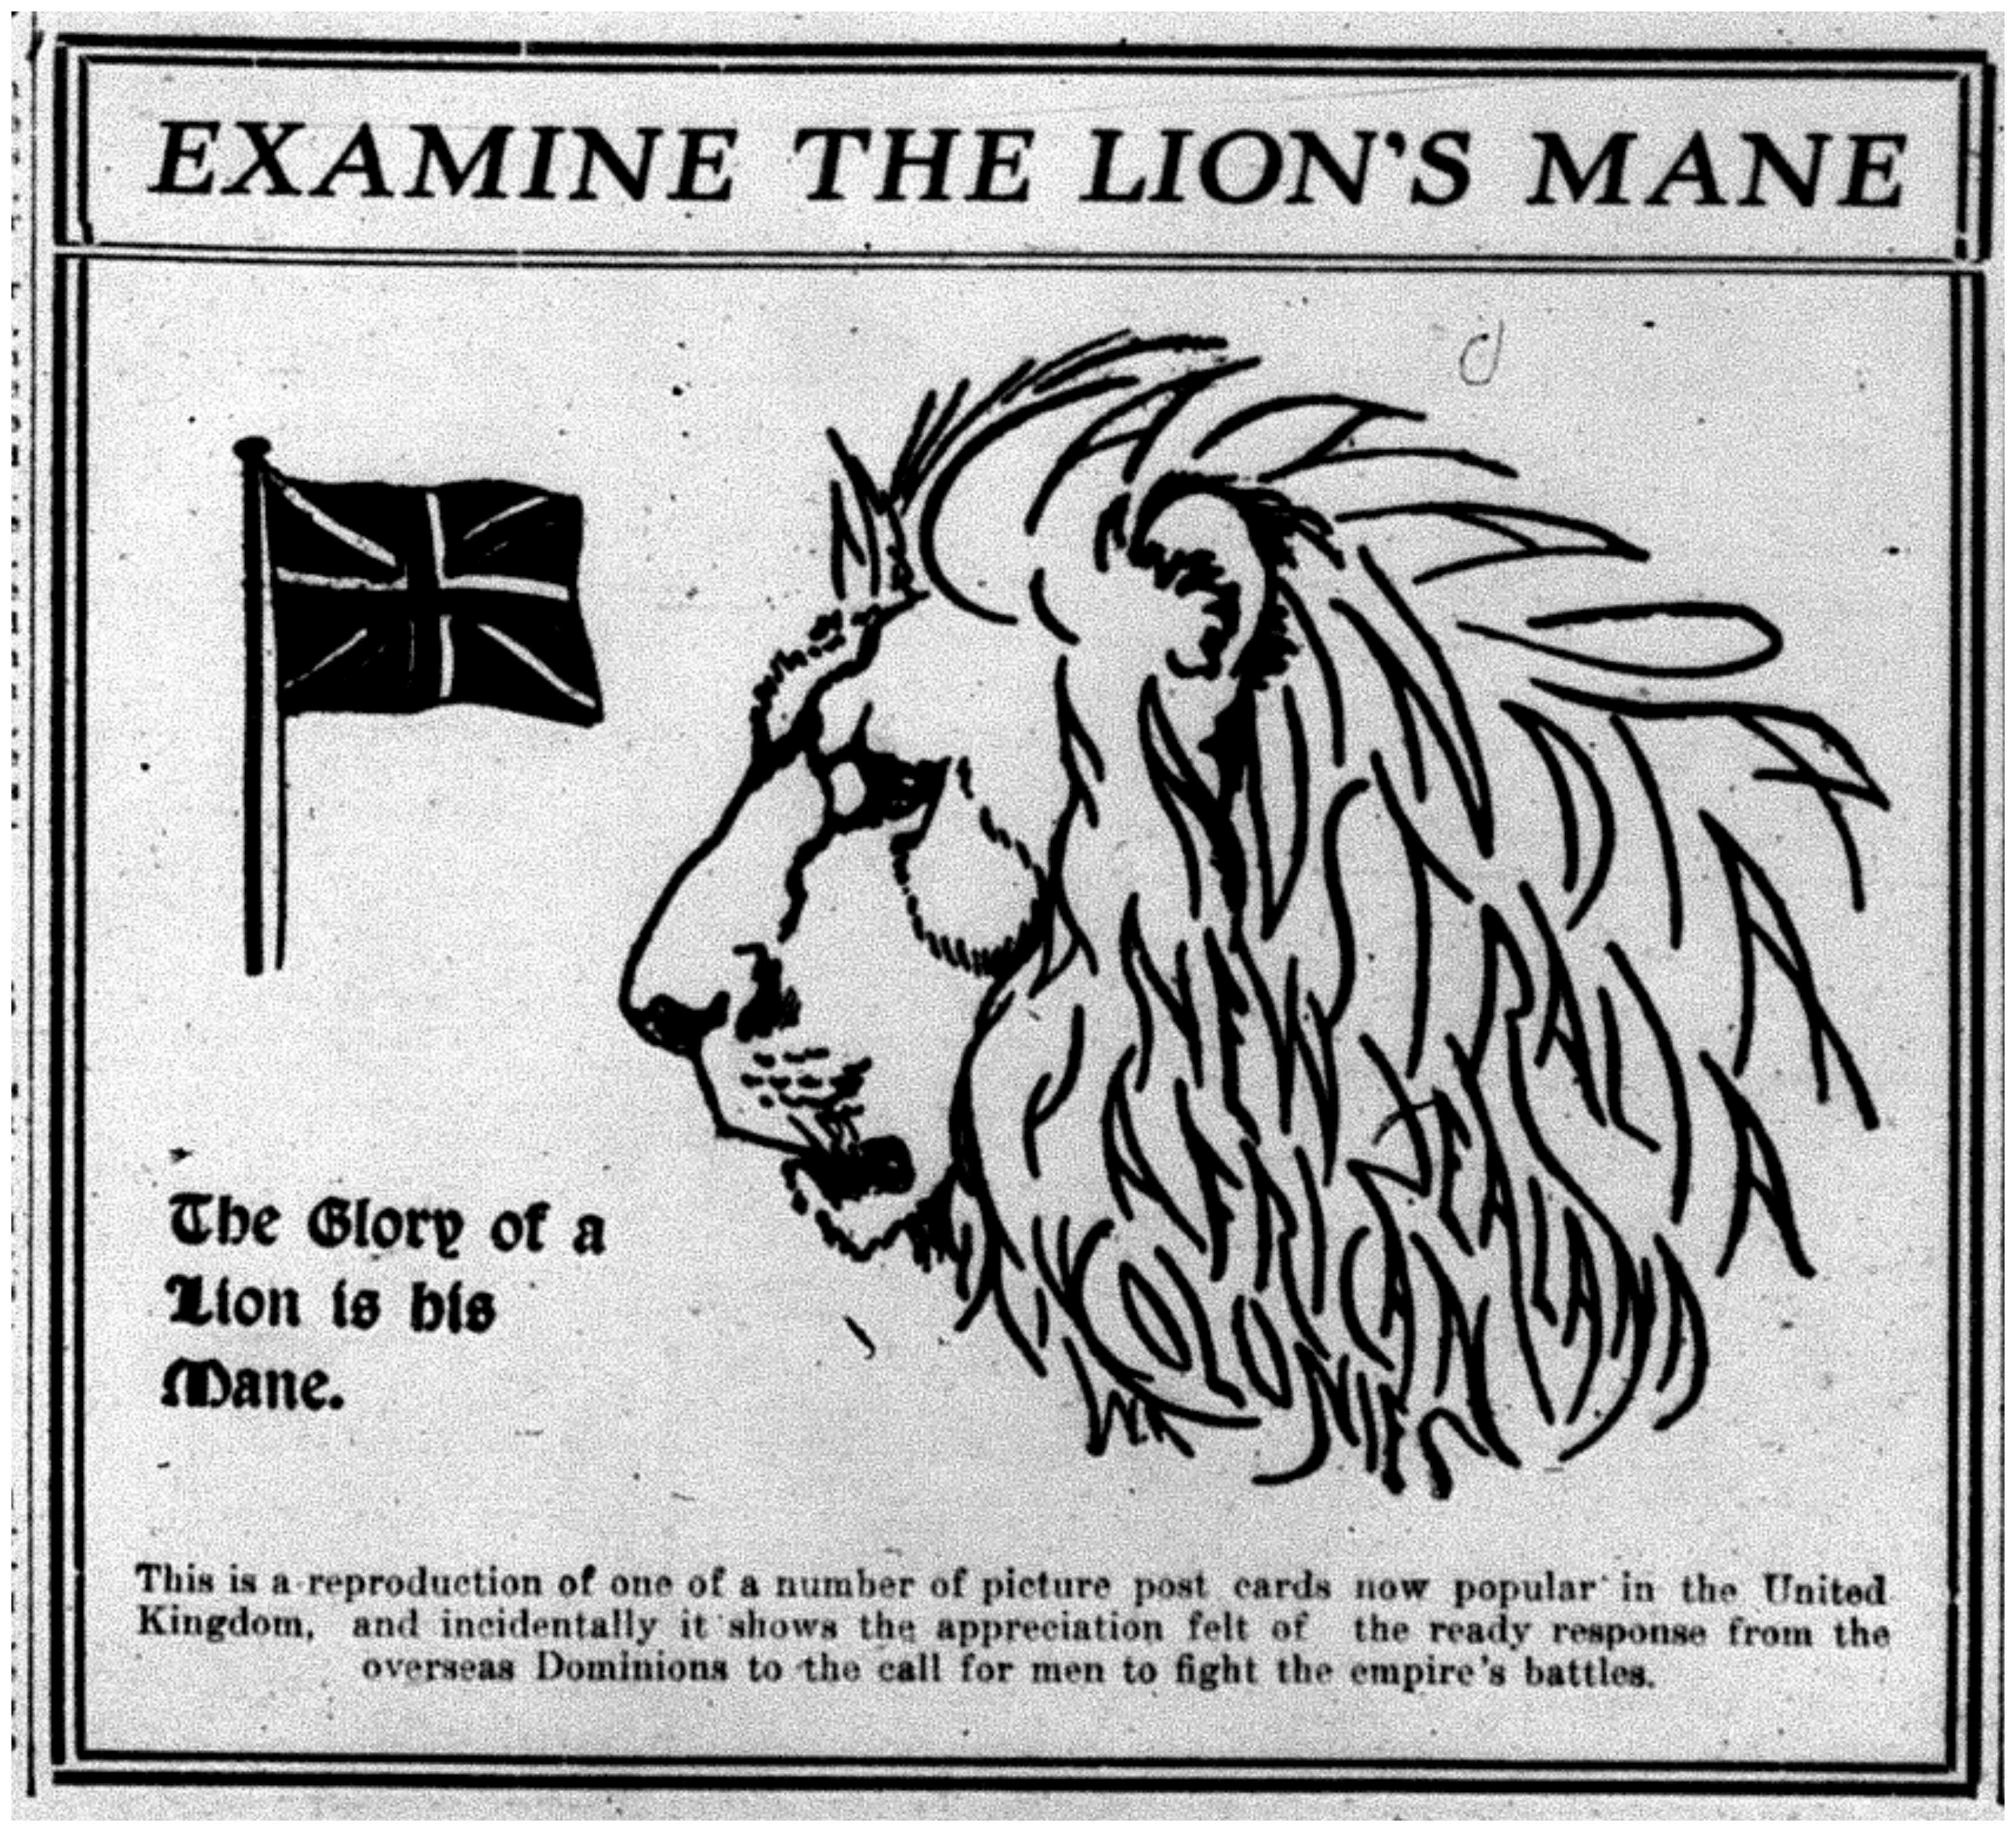 "Examine the Lion's Mane"